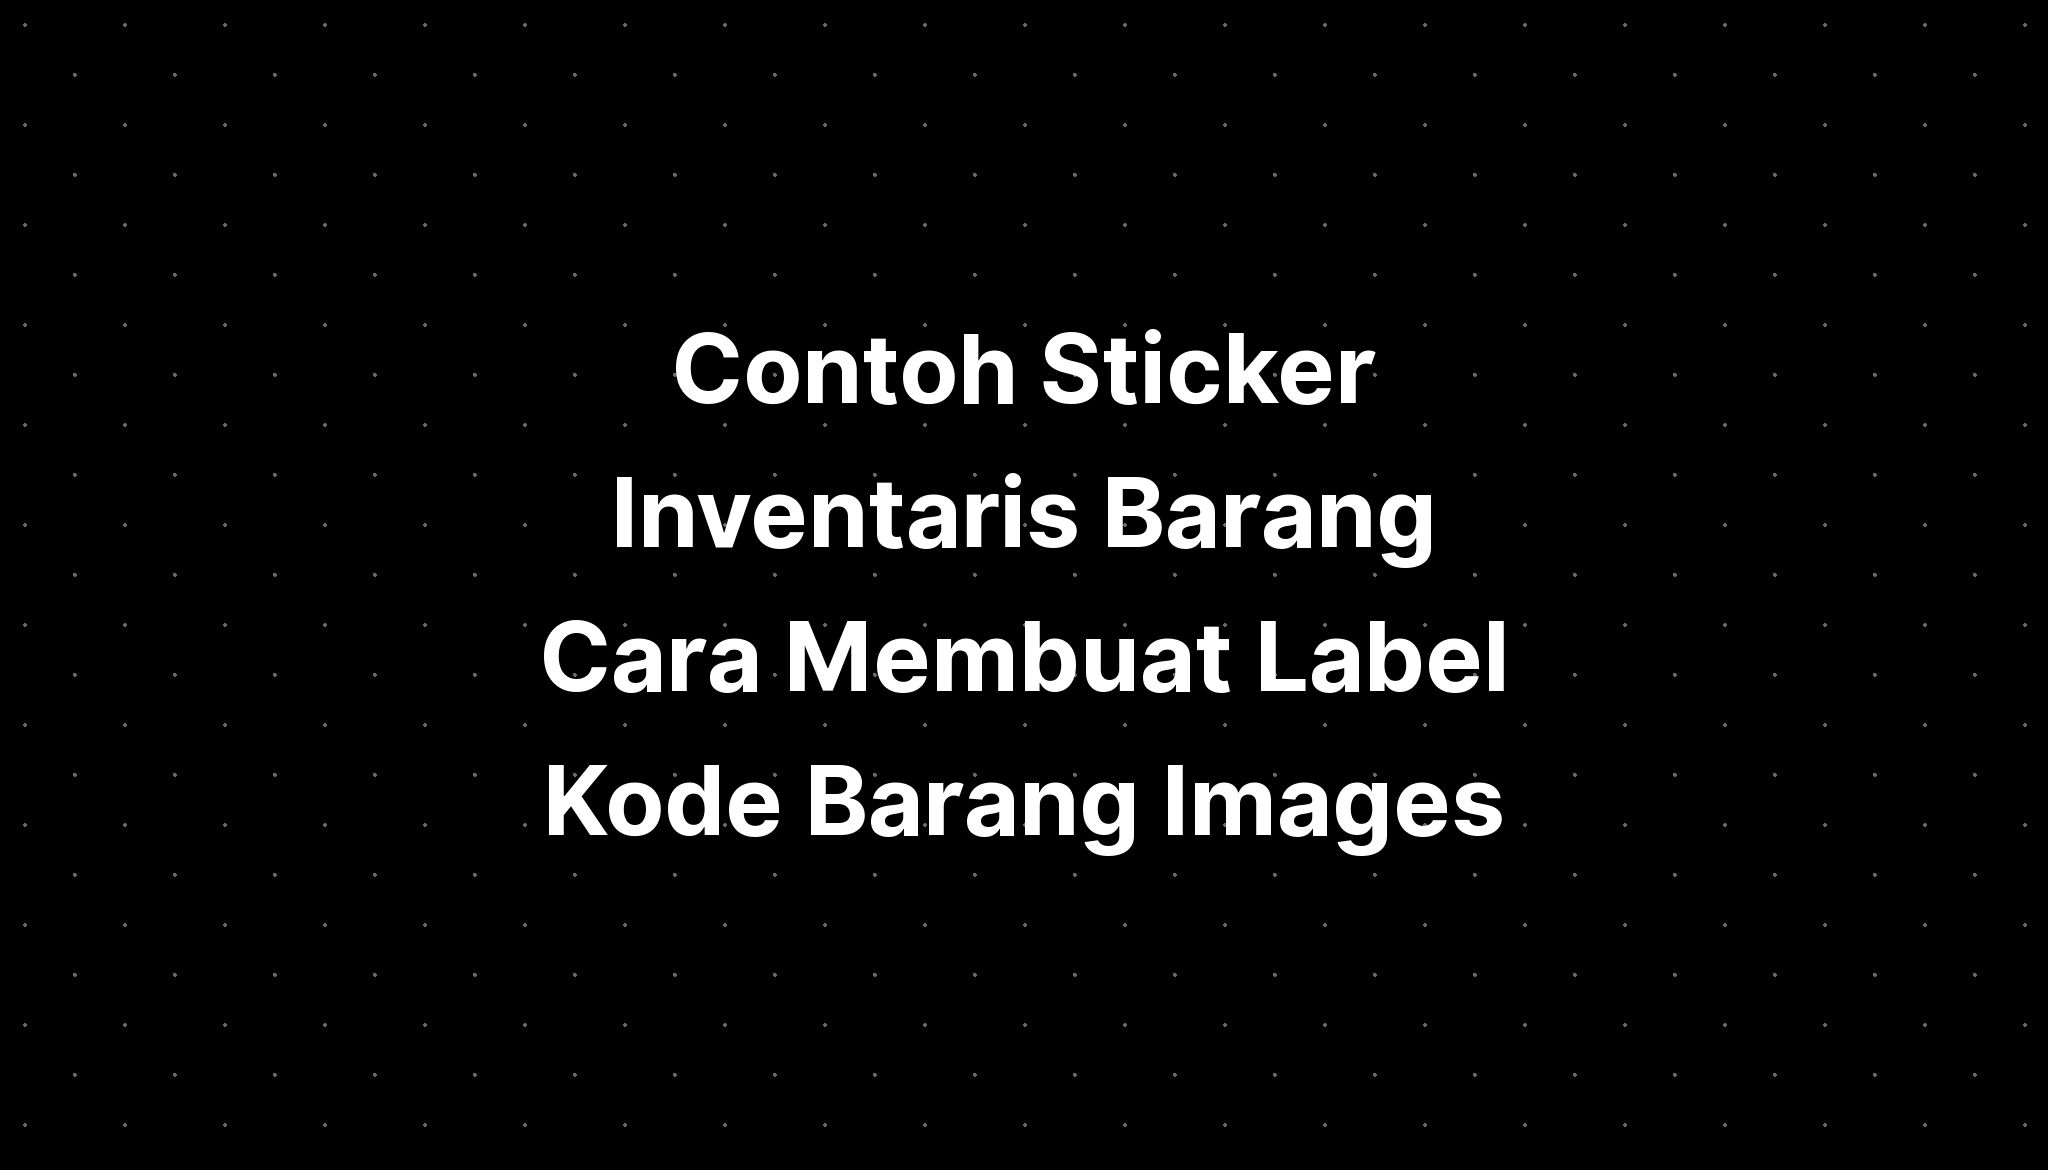 Contoh Sticker Inventaris Barang Cara Membuat Label Kode Barang Images